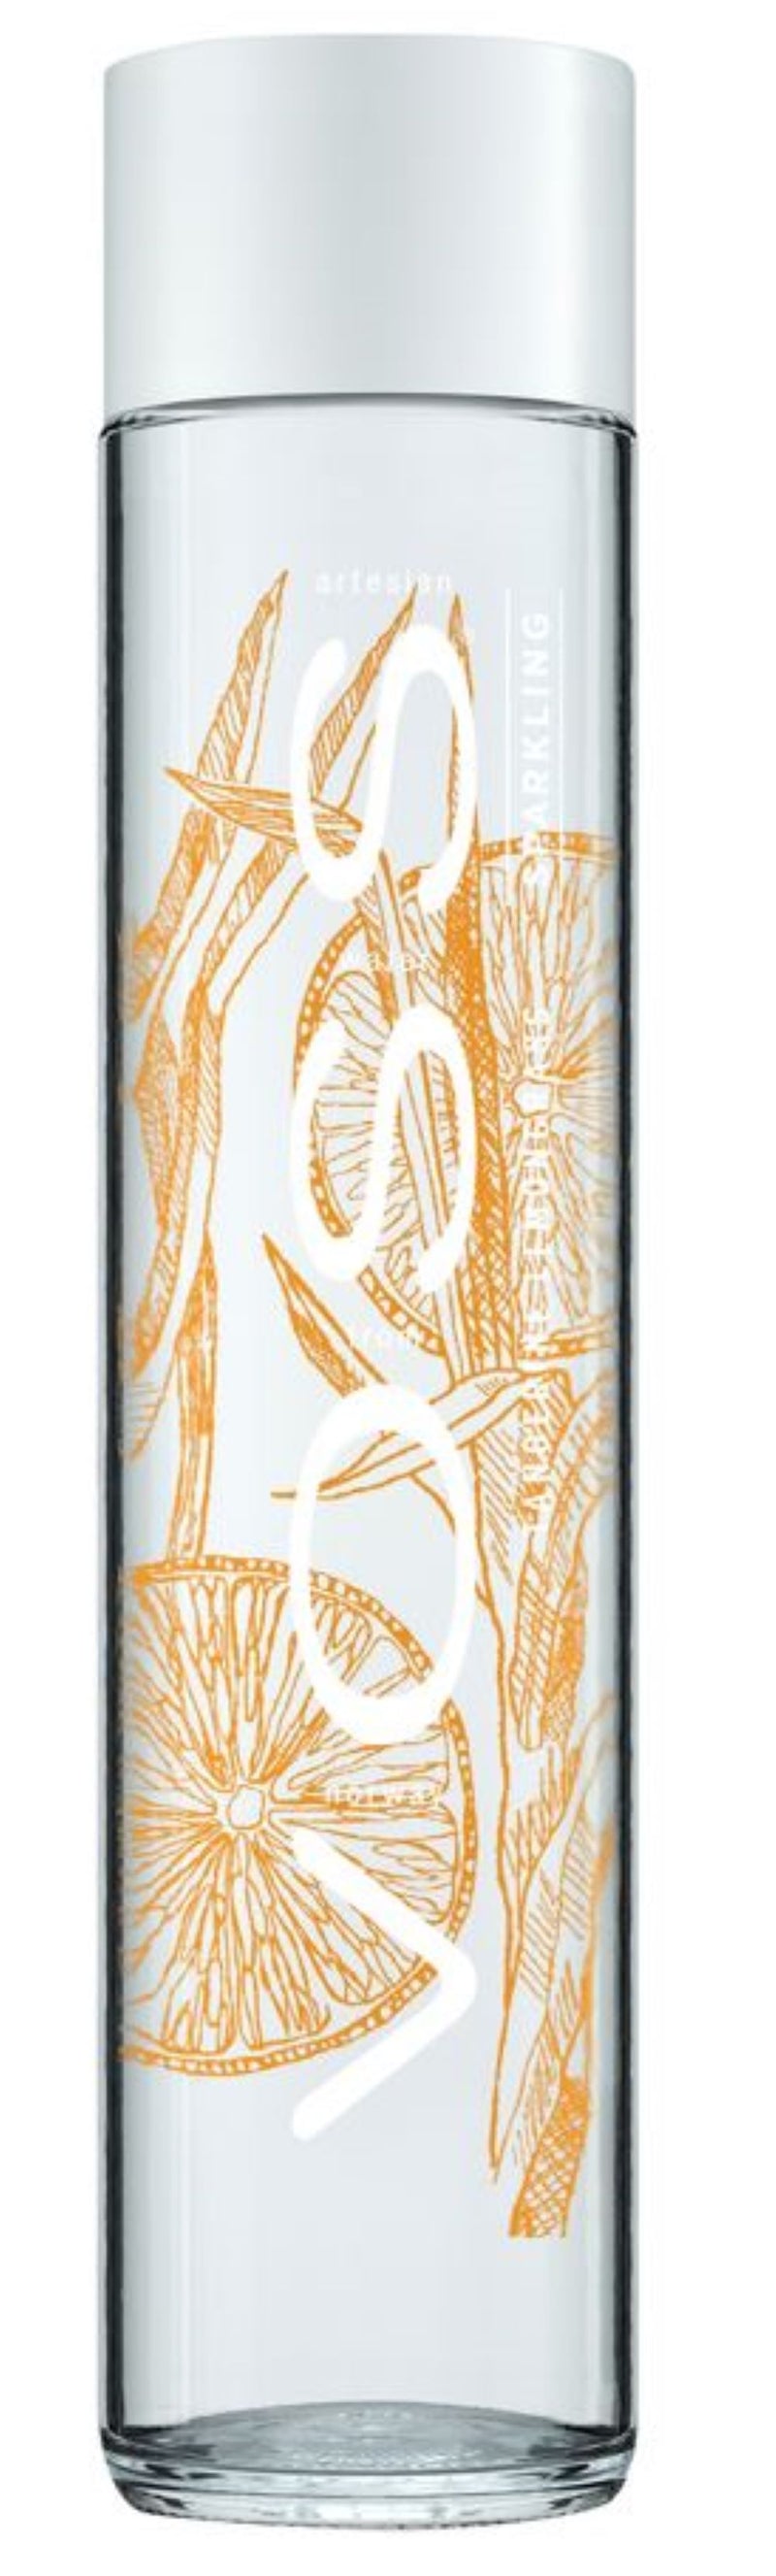 Sparkling Voss Water Tangerine & Lemongrass 375ml